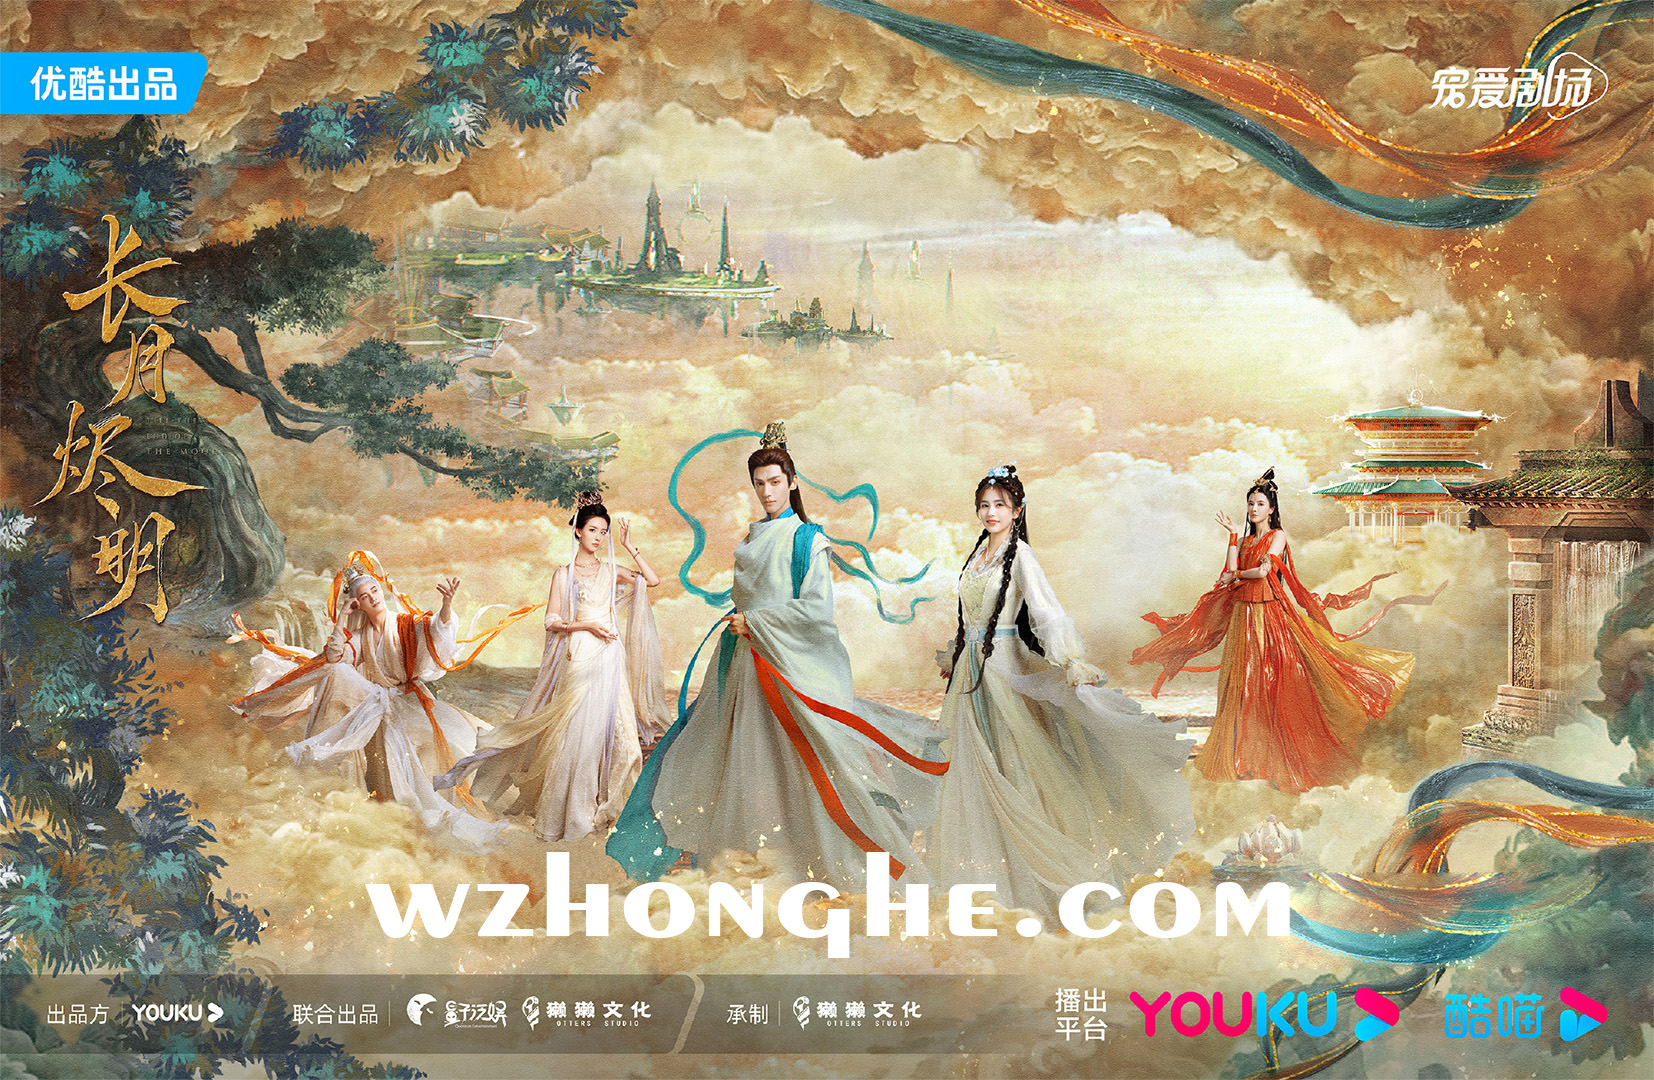 长月烬明 - 无中和wzhonghe.com -2